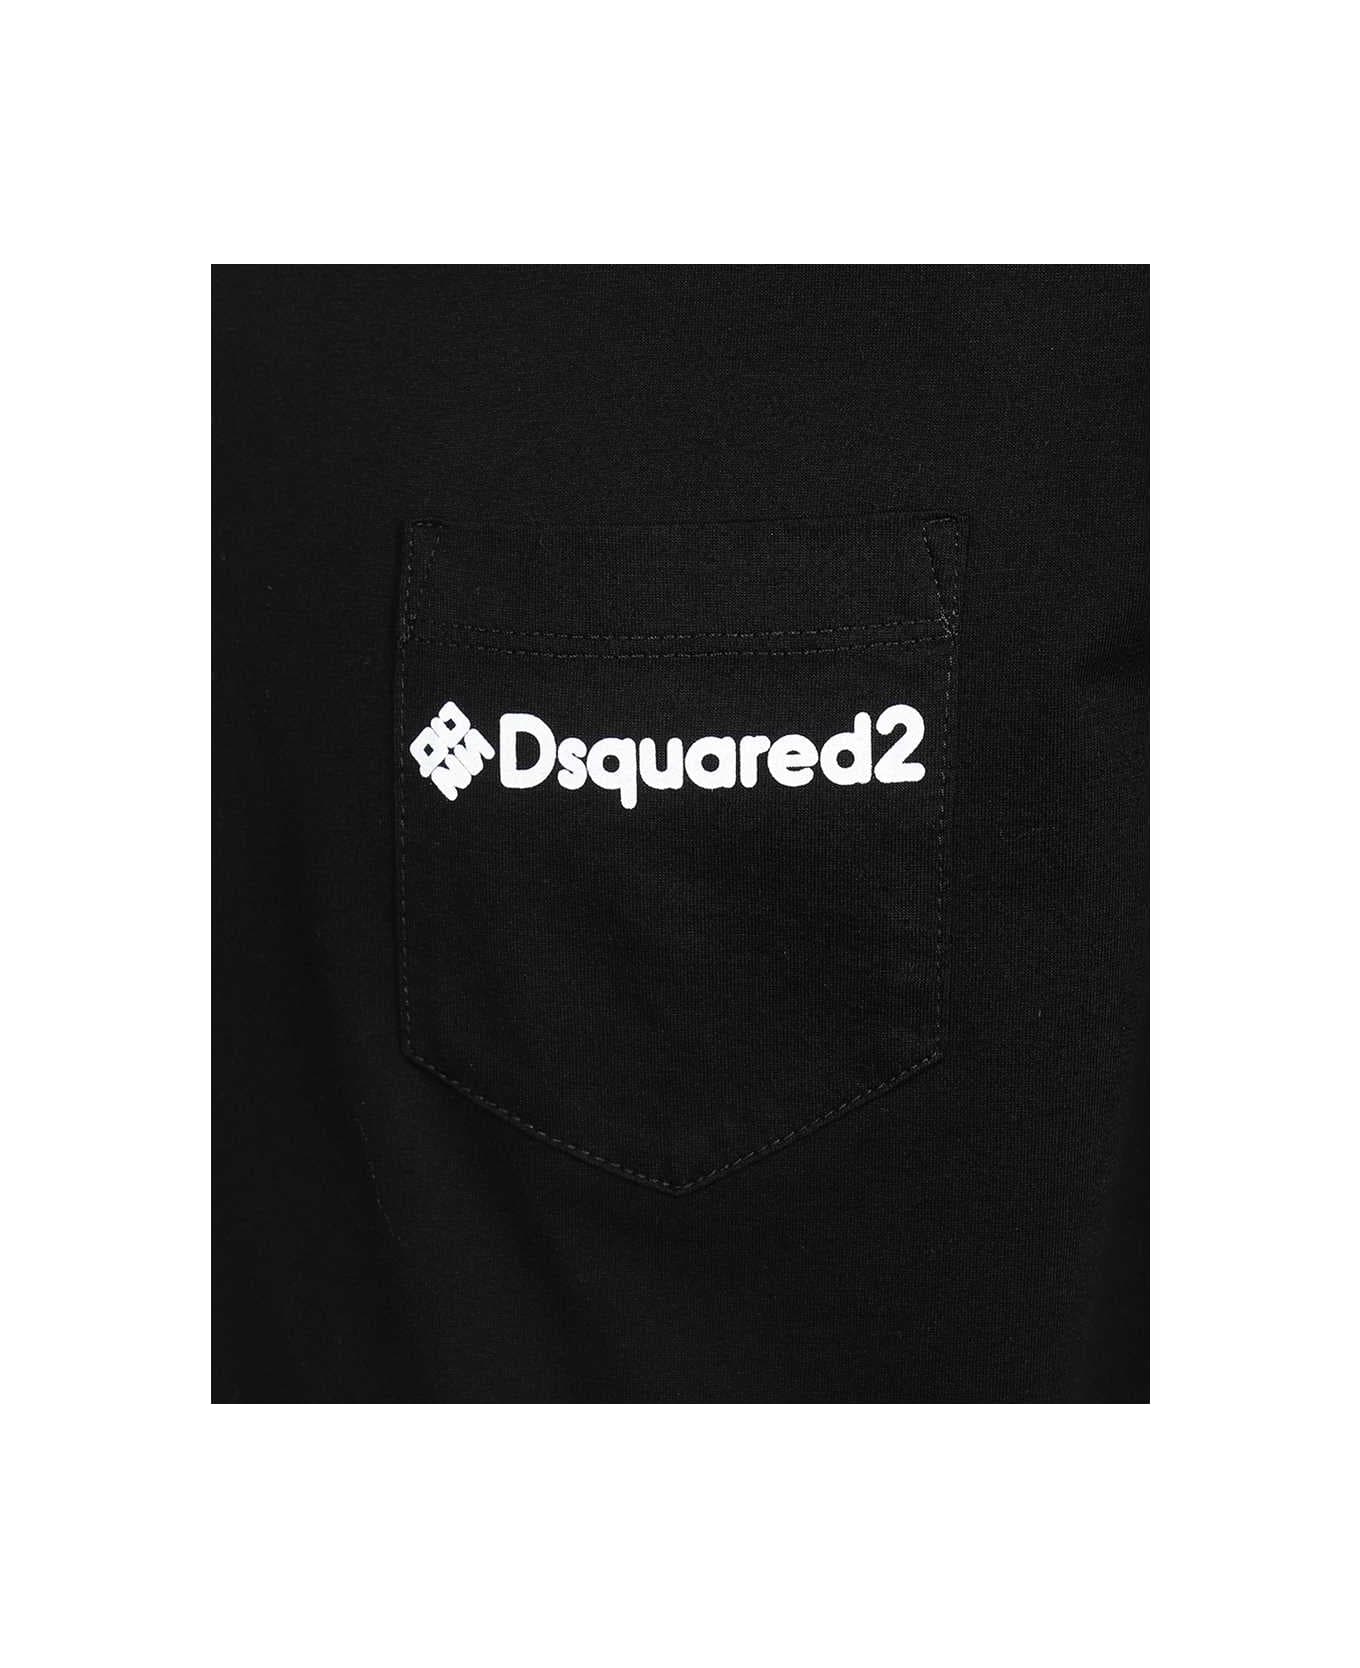 Dsquared2 Cotton Crew-neck T-shirt - black